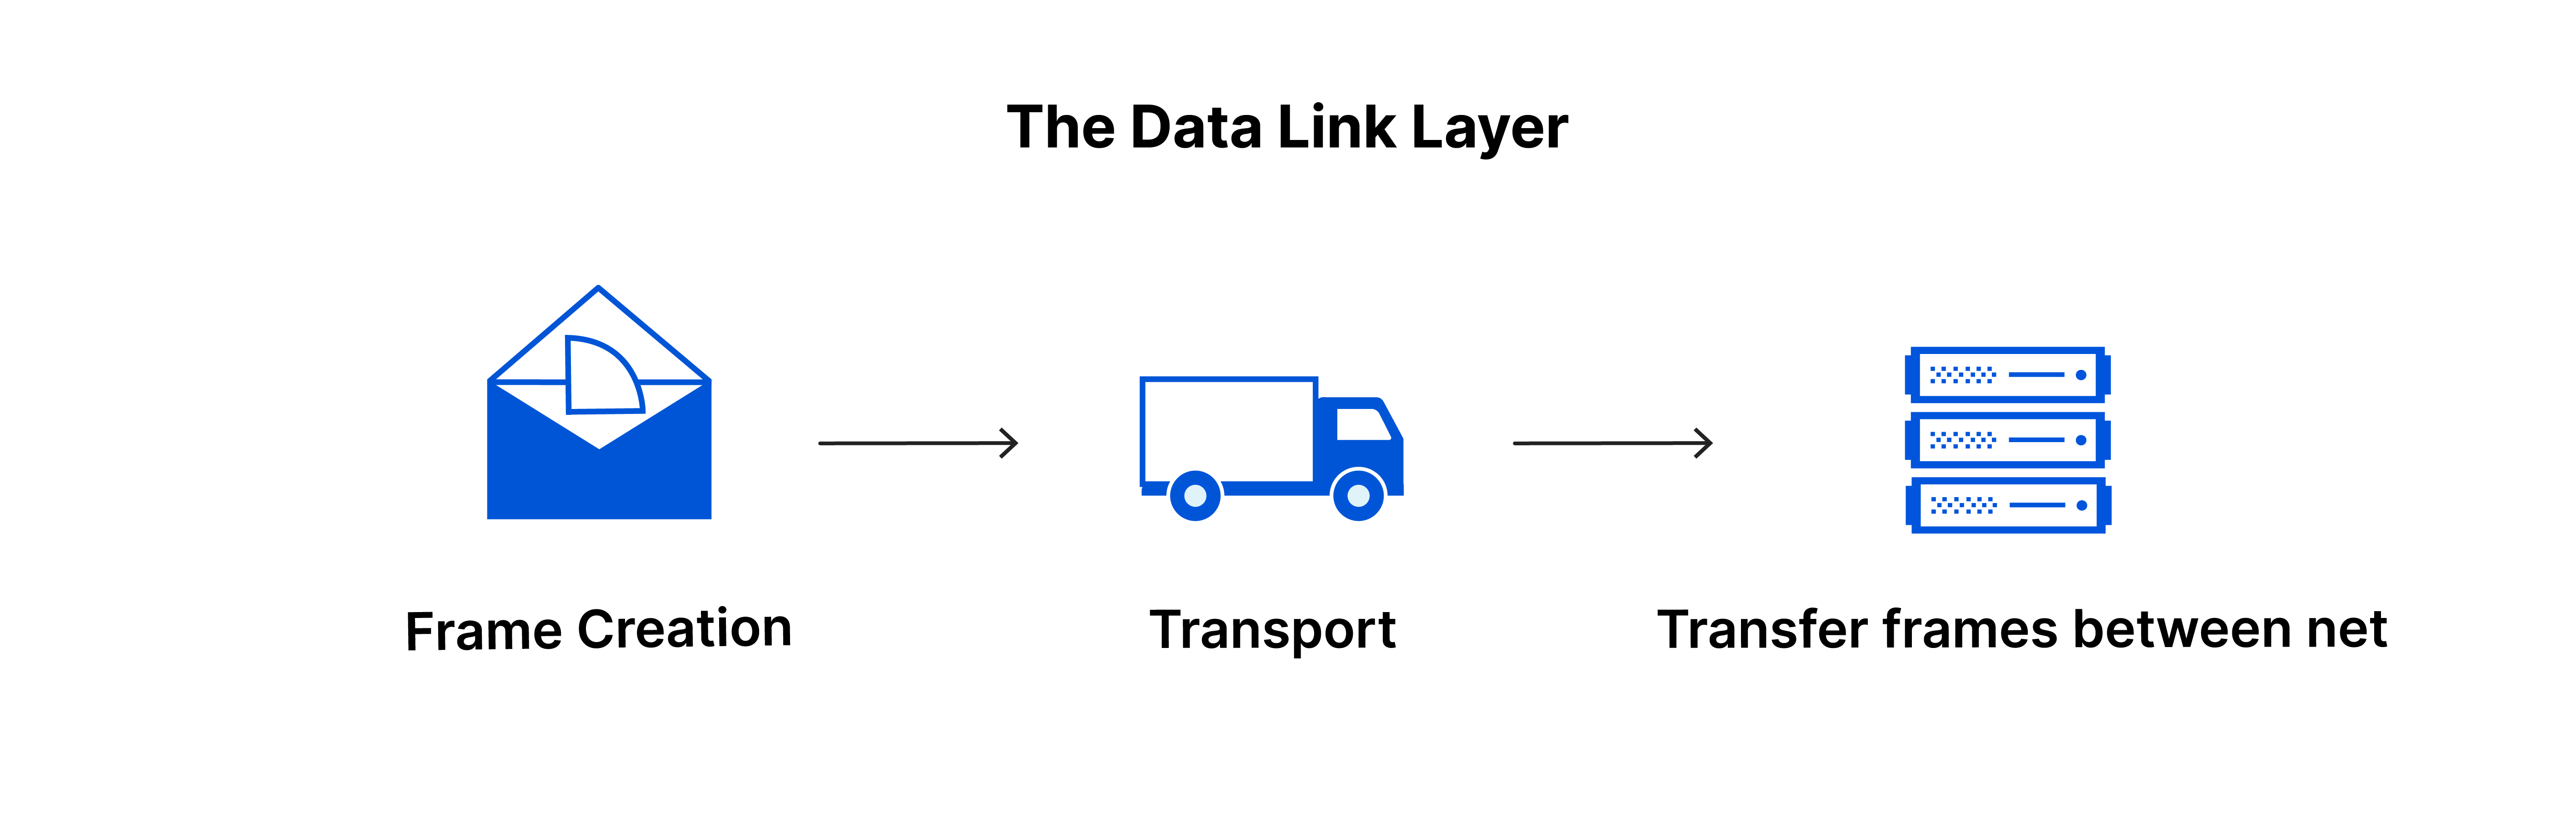 데이터 링크 계층: 프레임 생성, 네트워크 간에 전송되는 프레임